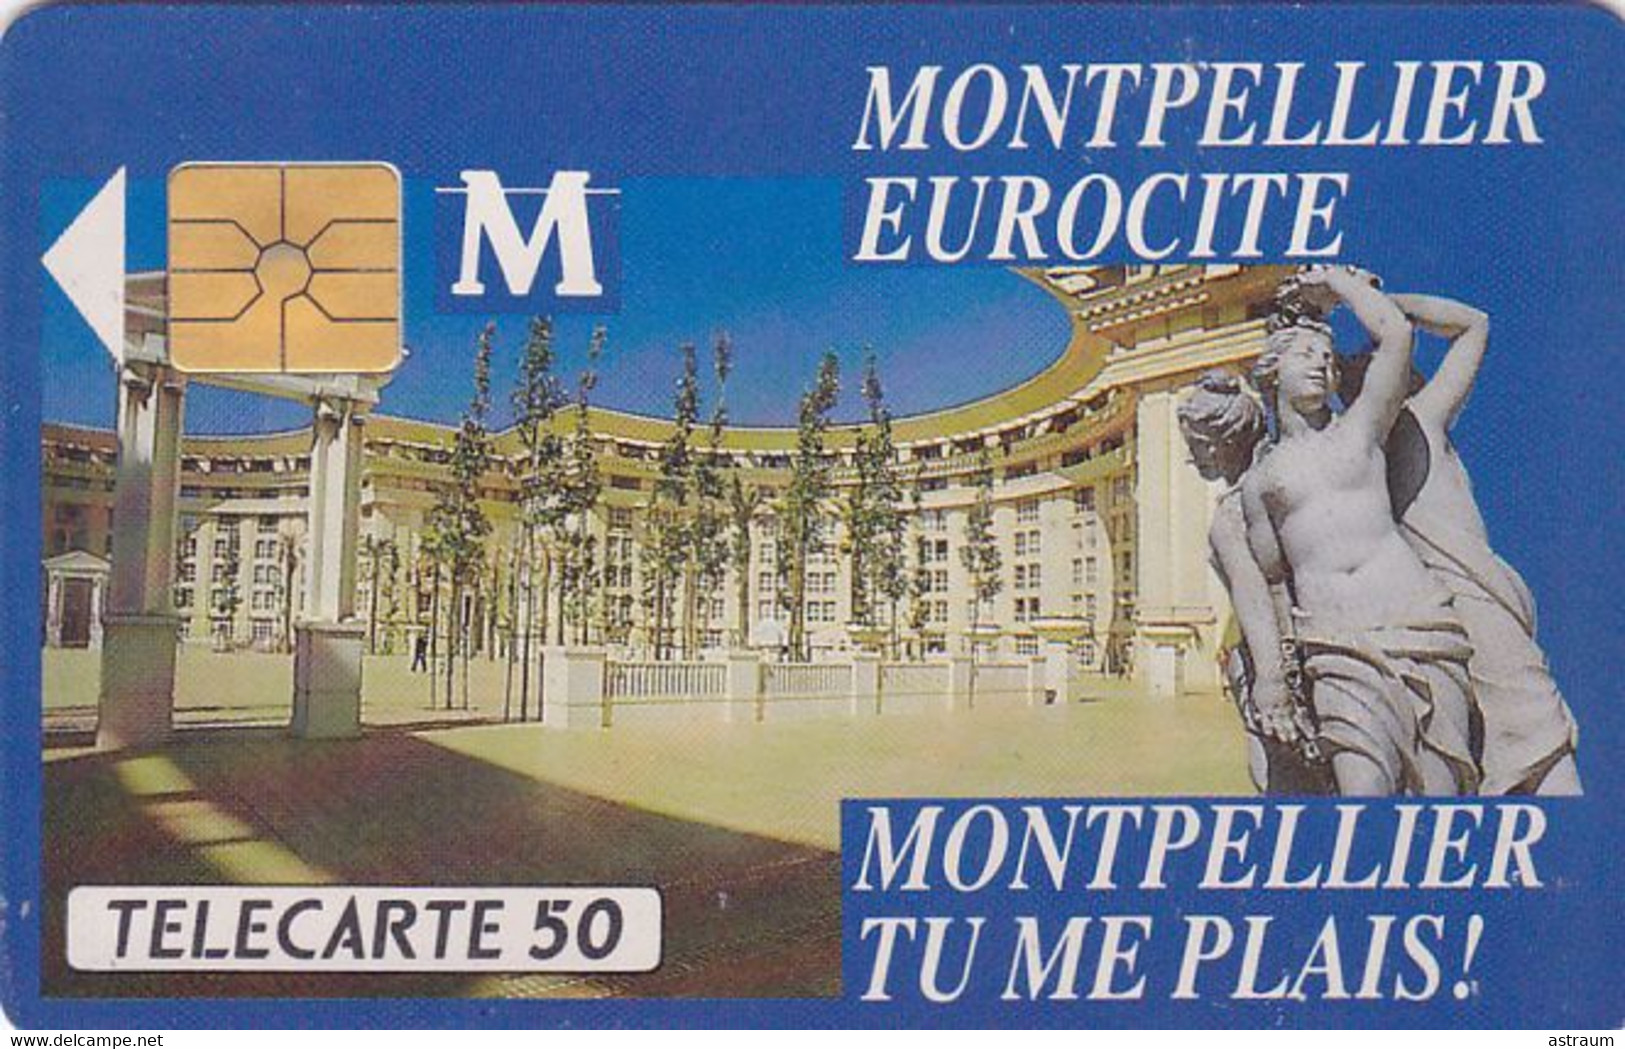 Telecarte Privée - D325 - Montpellier Eurocité - Gem - 1500 Ex  - 50 Un - 1990 - Privées